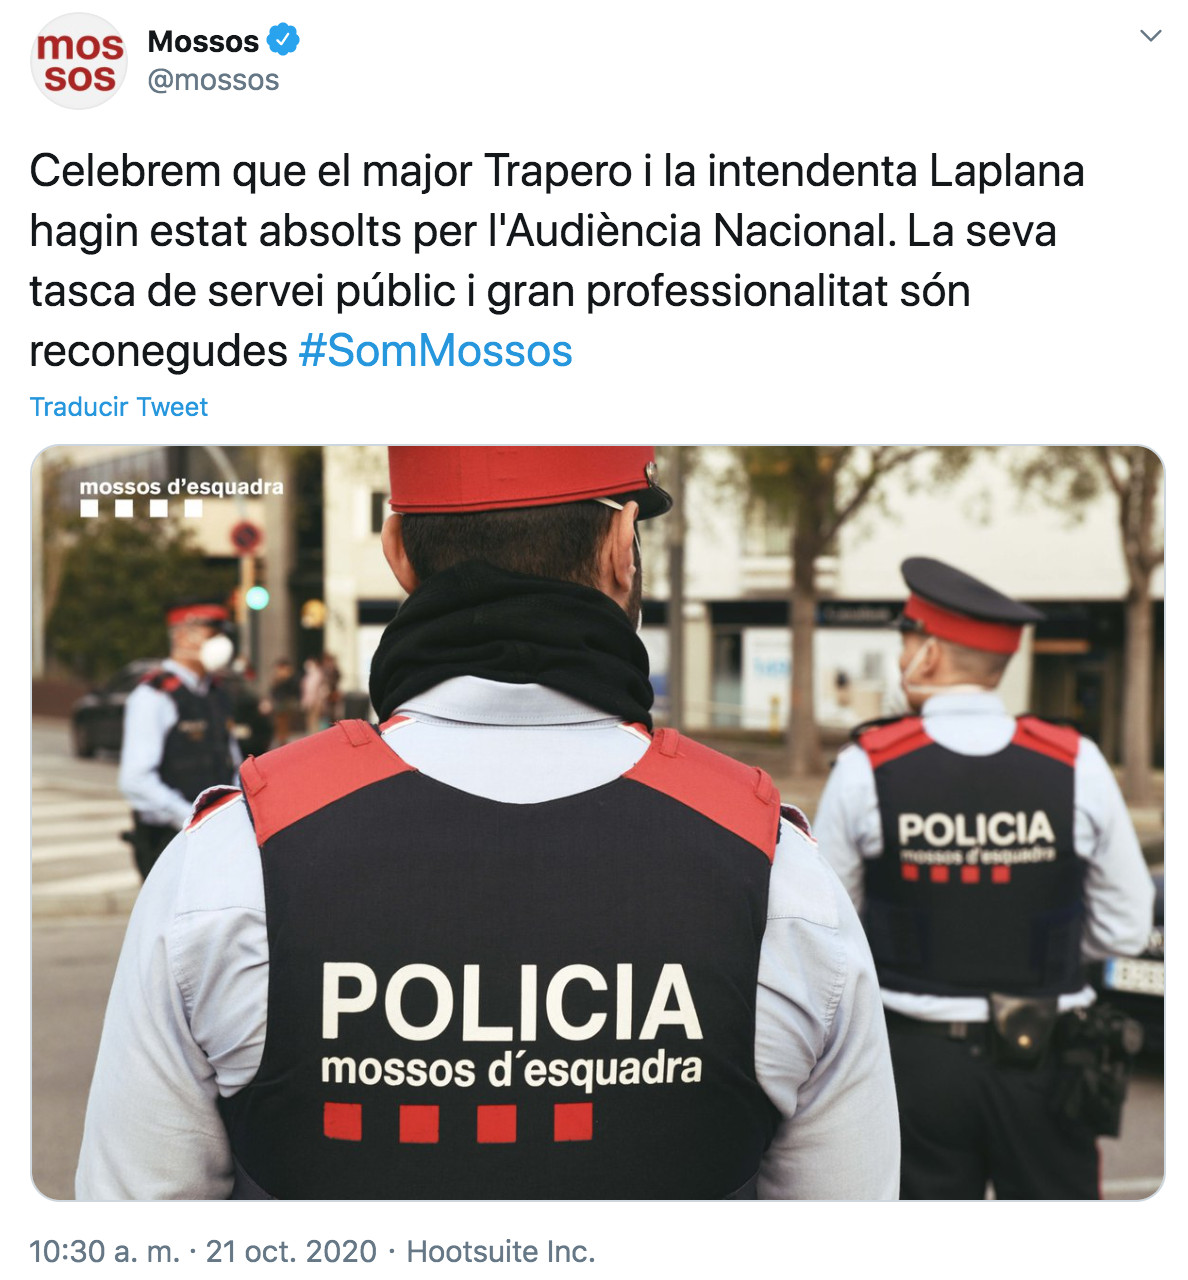 Celebramos que el mayor Trapero y la intendente Laplana hayan sido absueltos por la Audiencia Nacional. Su trabajo de servicio público y gran profesionalidad han sido reconocidos, ha expresado la policía catalana en su cuenta de Twitter oficial.